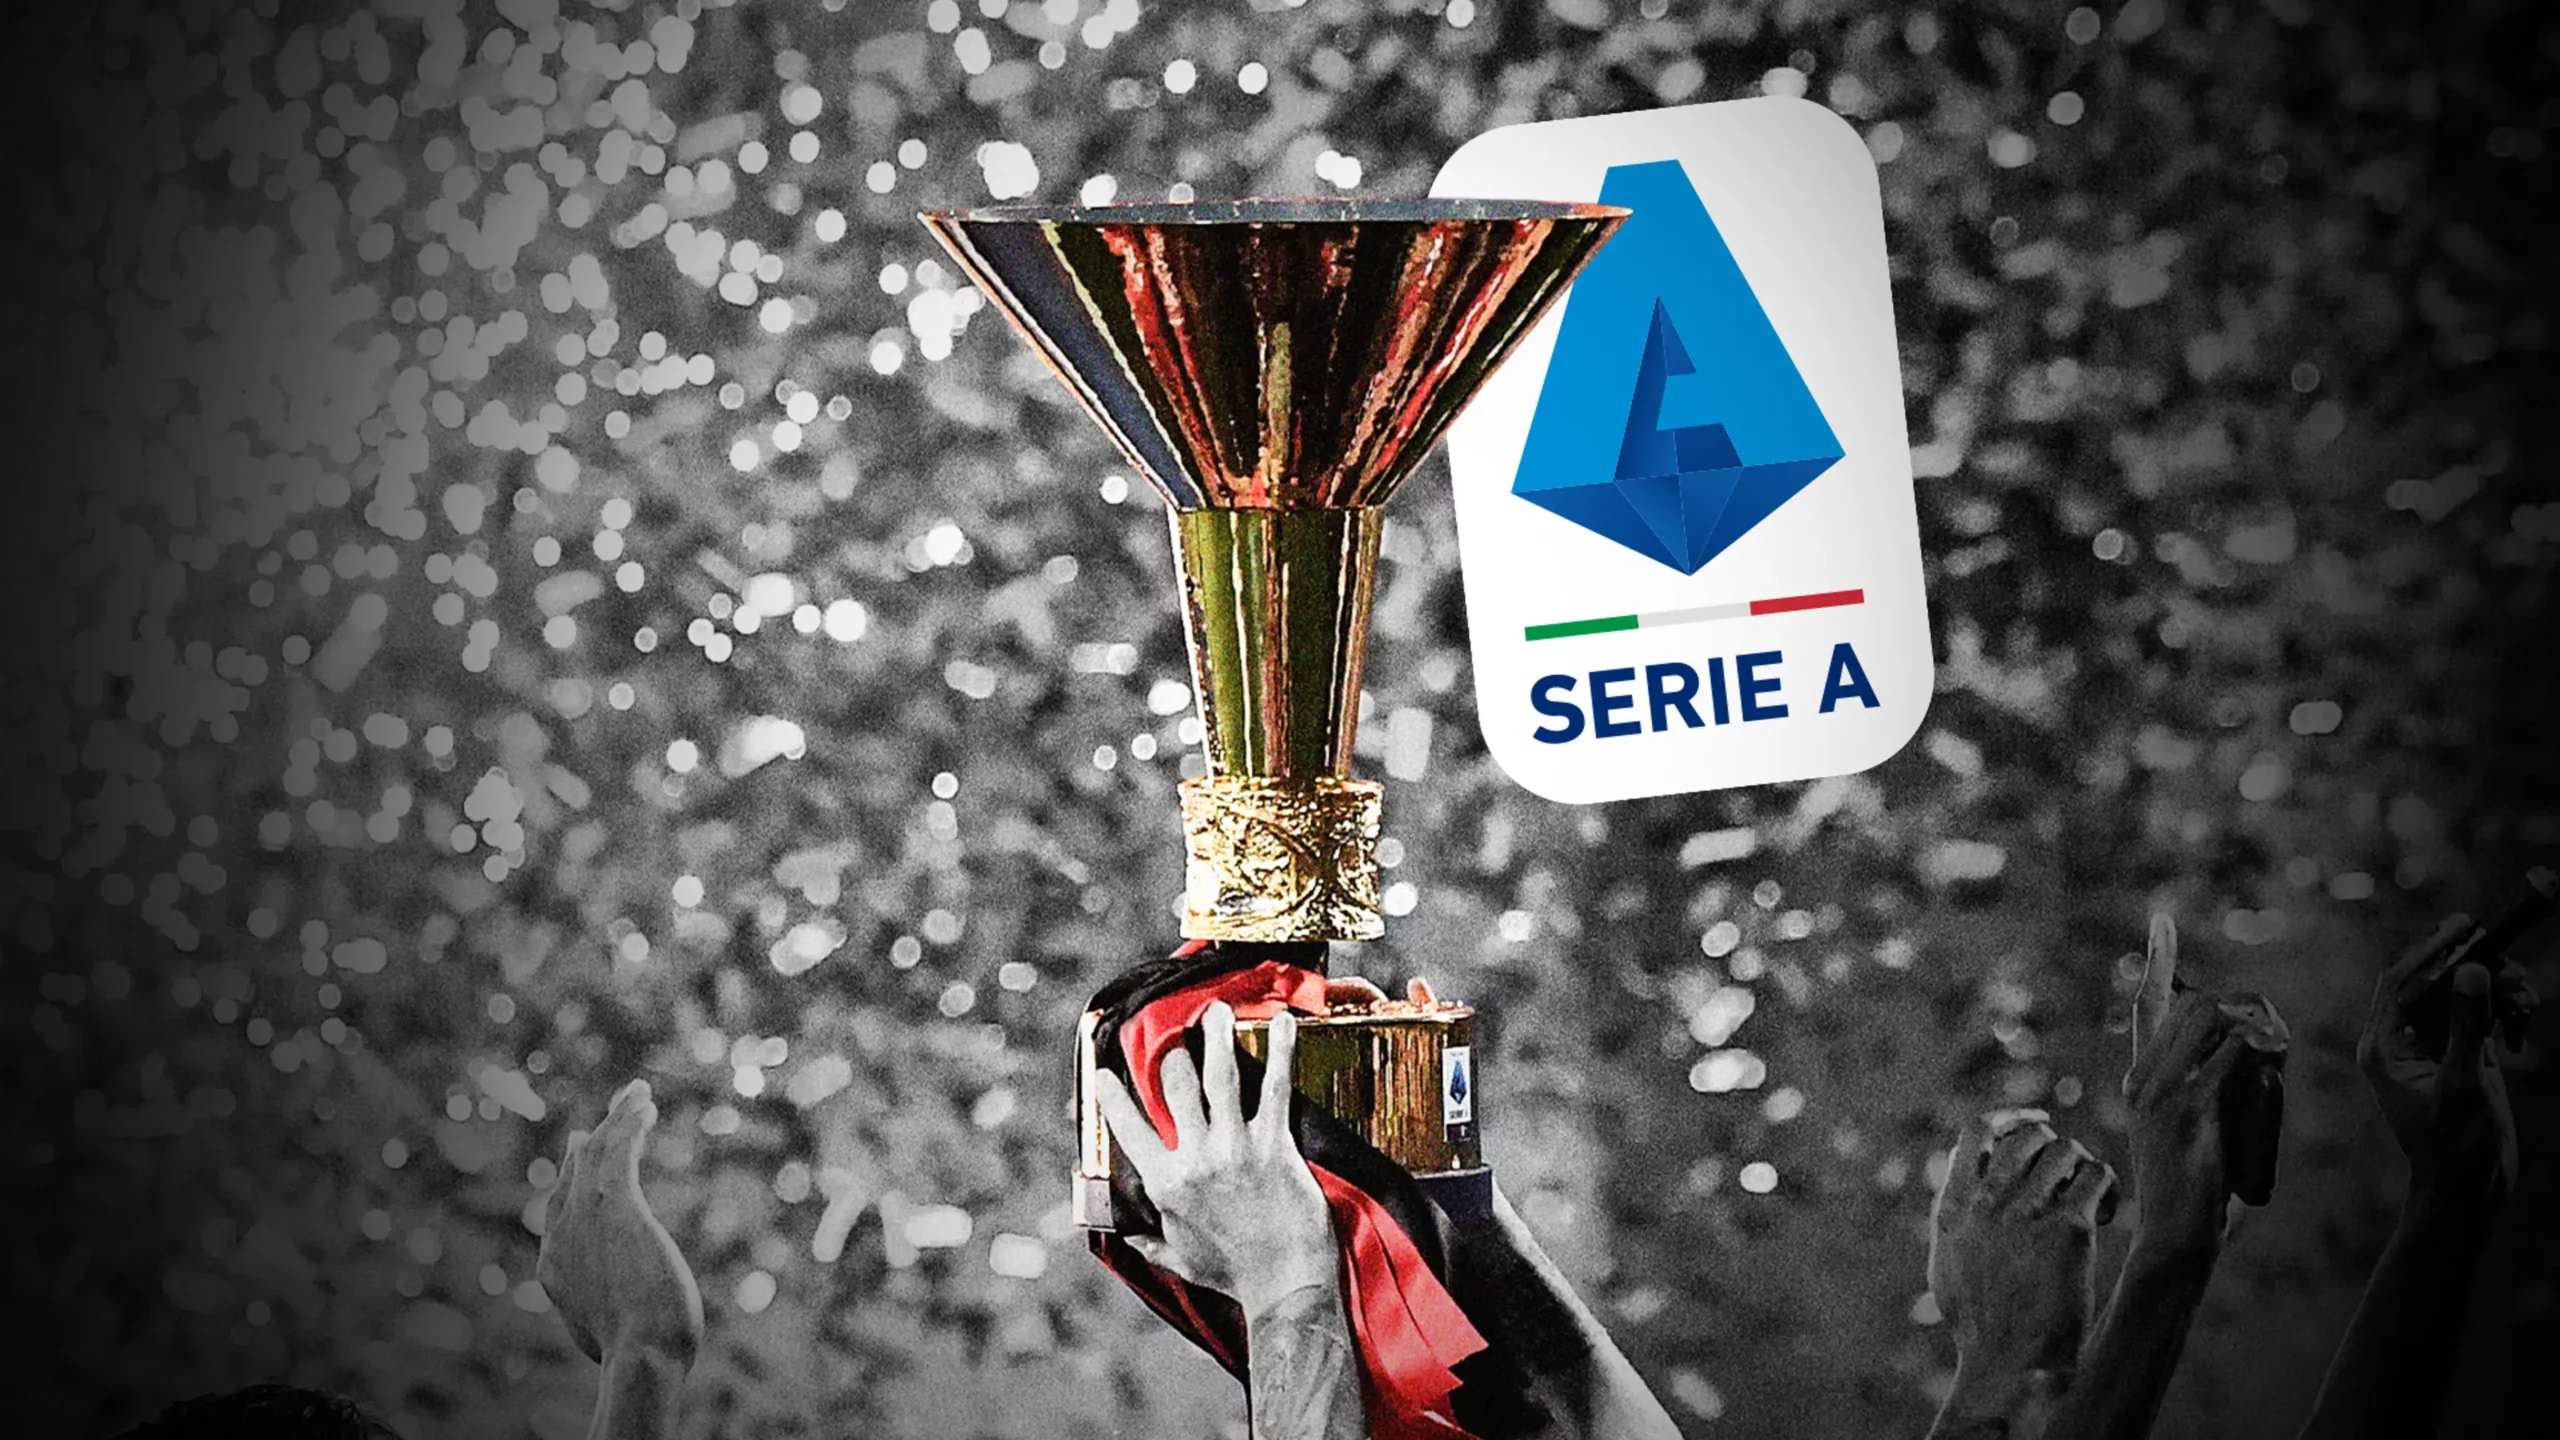 Serie A nổi tiếng trong giới bóng đá quốc gia hàng đầu châu Âu